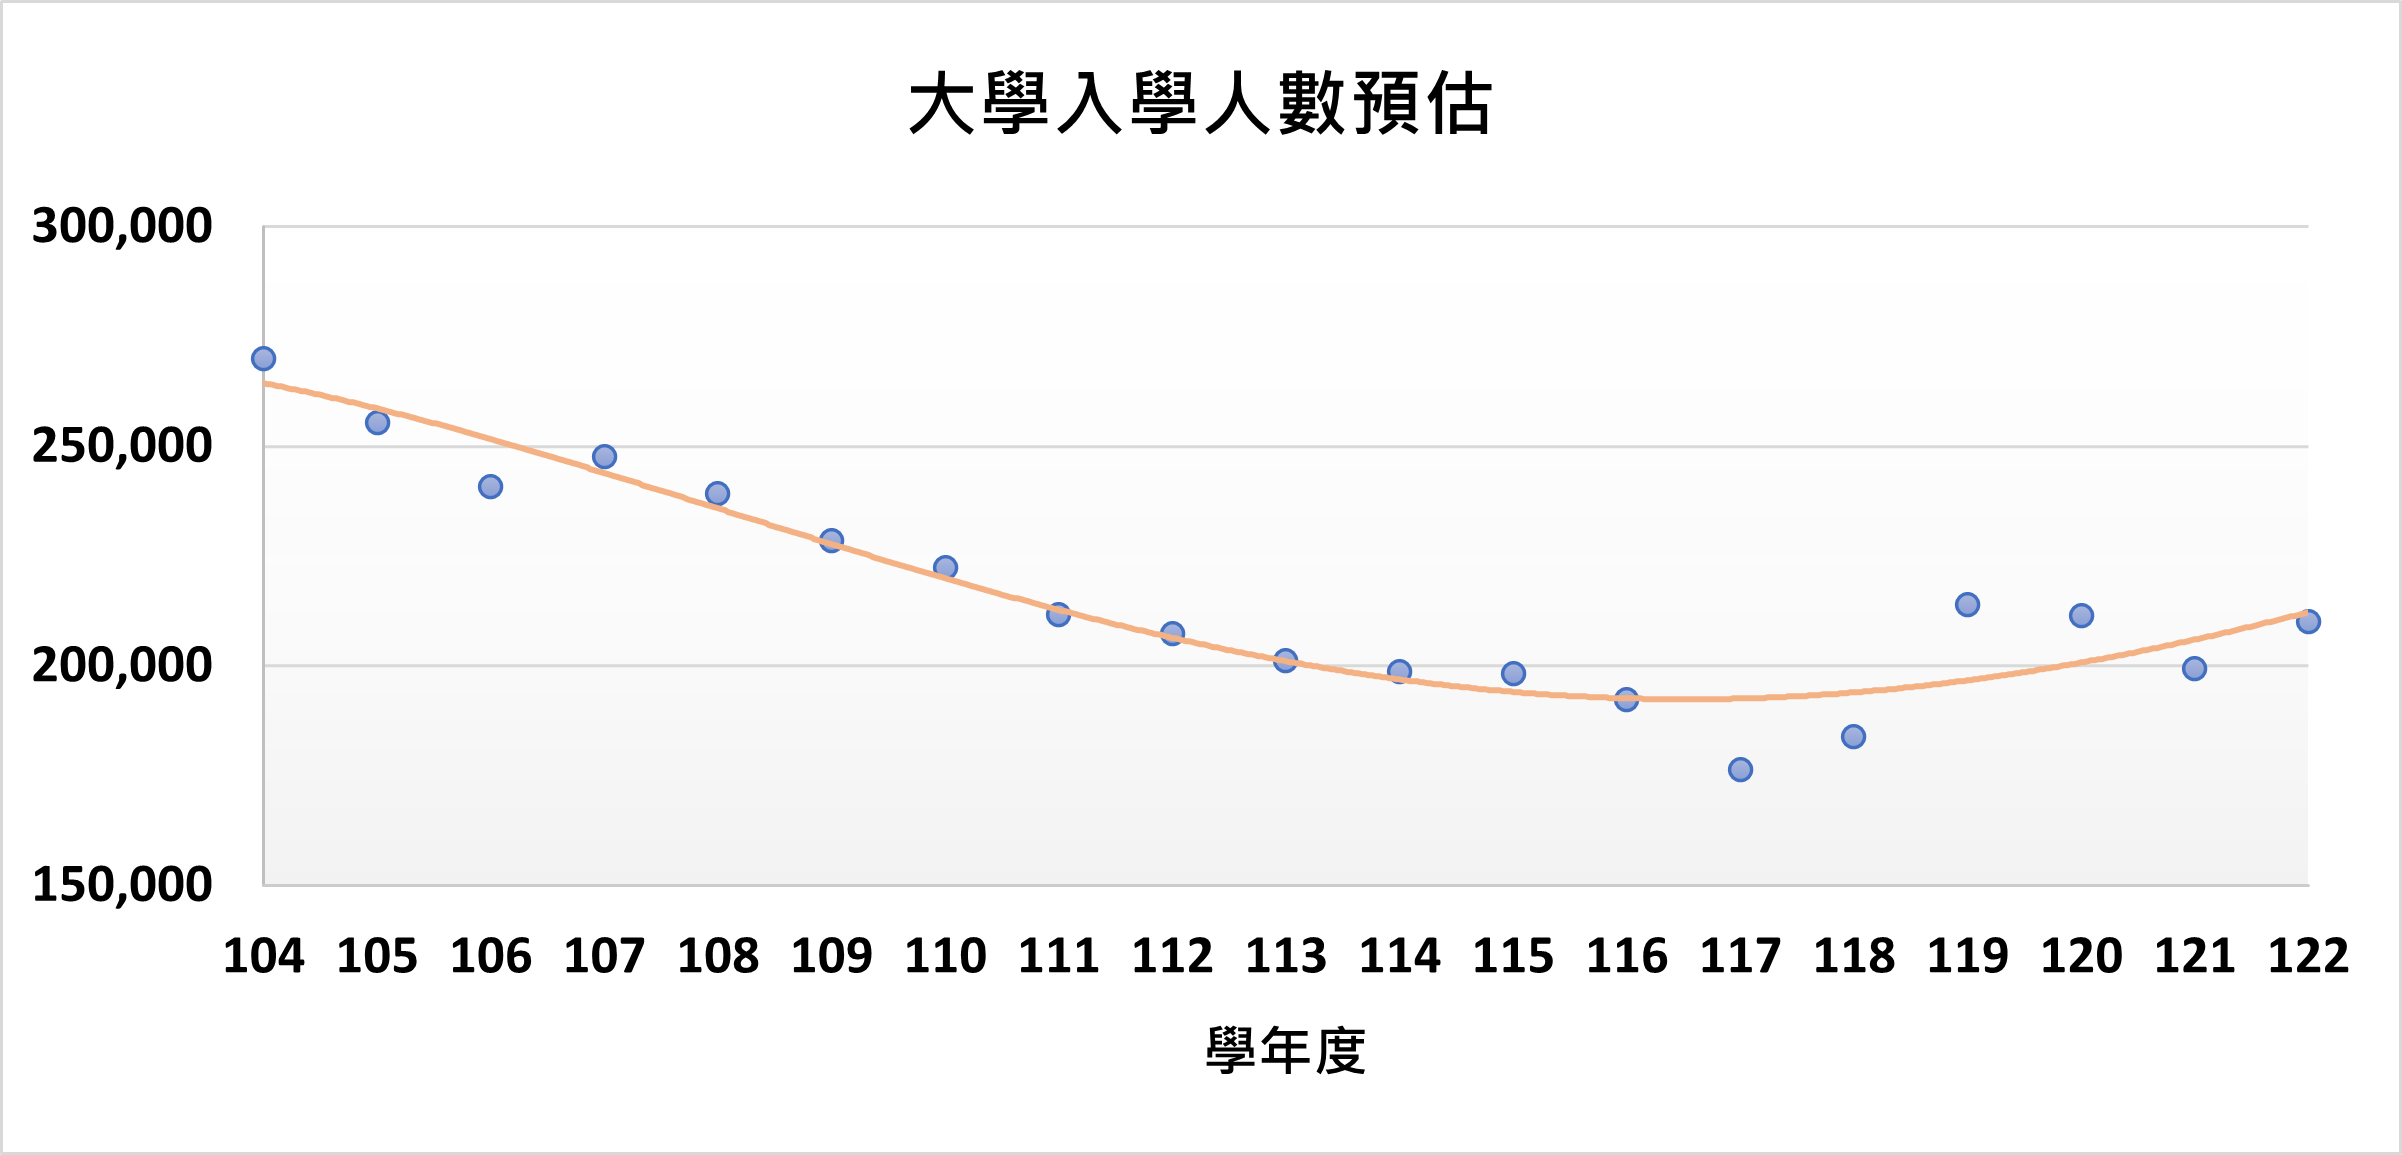 104-122學年度入學人數預估